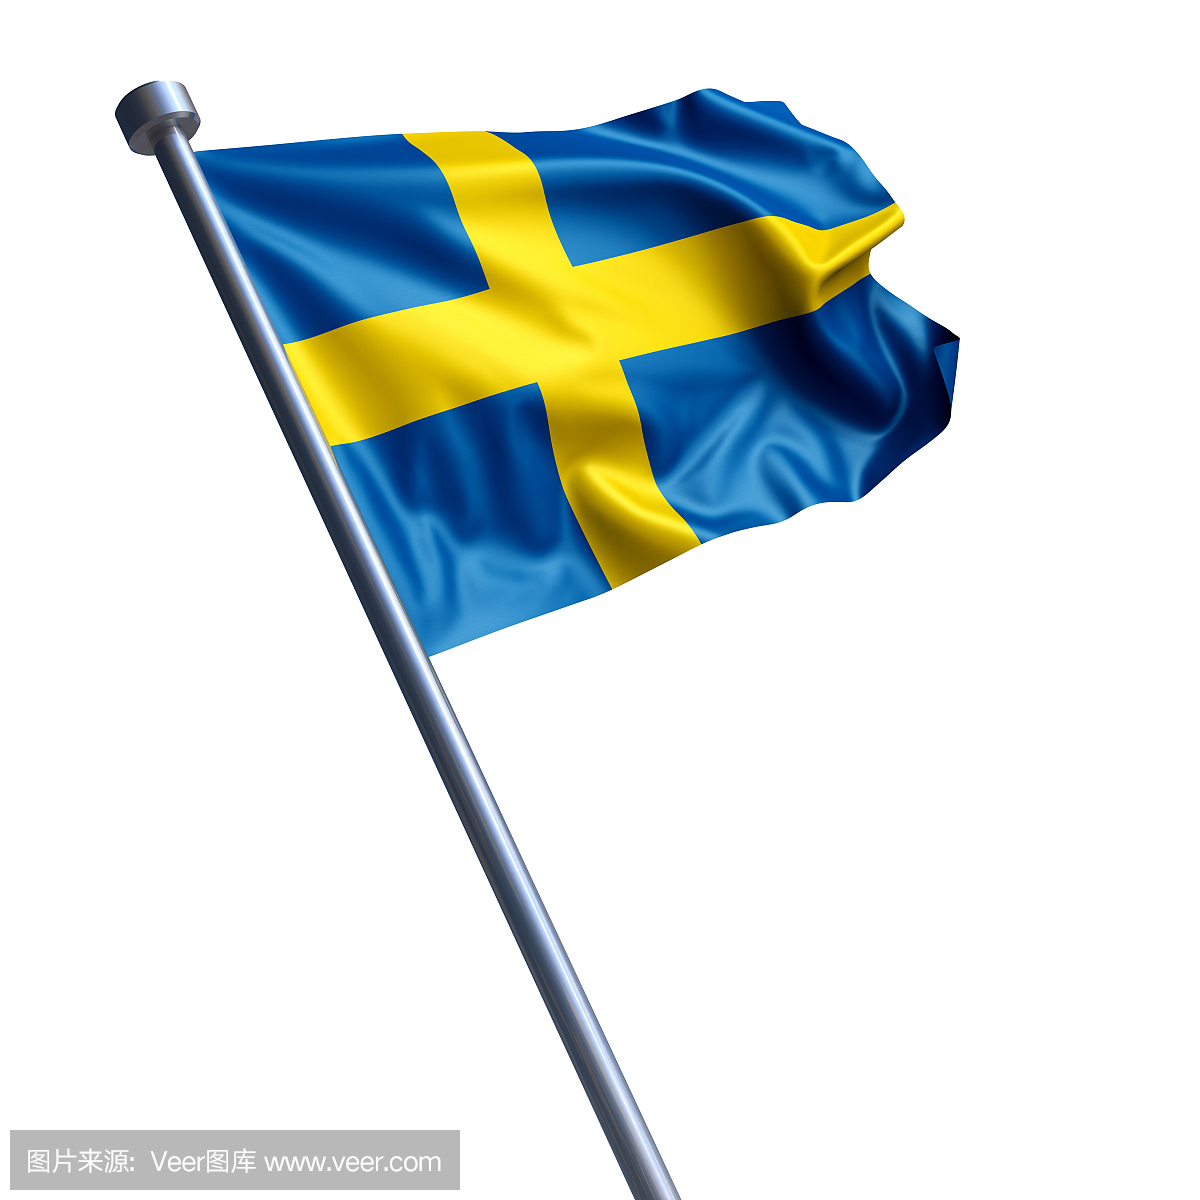 瑞典国旗被隔绝在白色